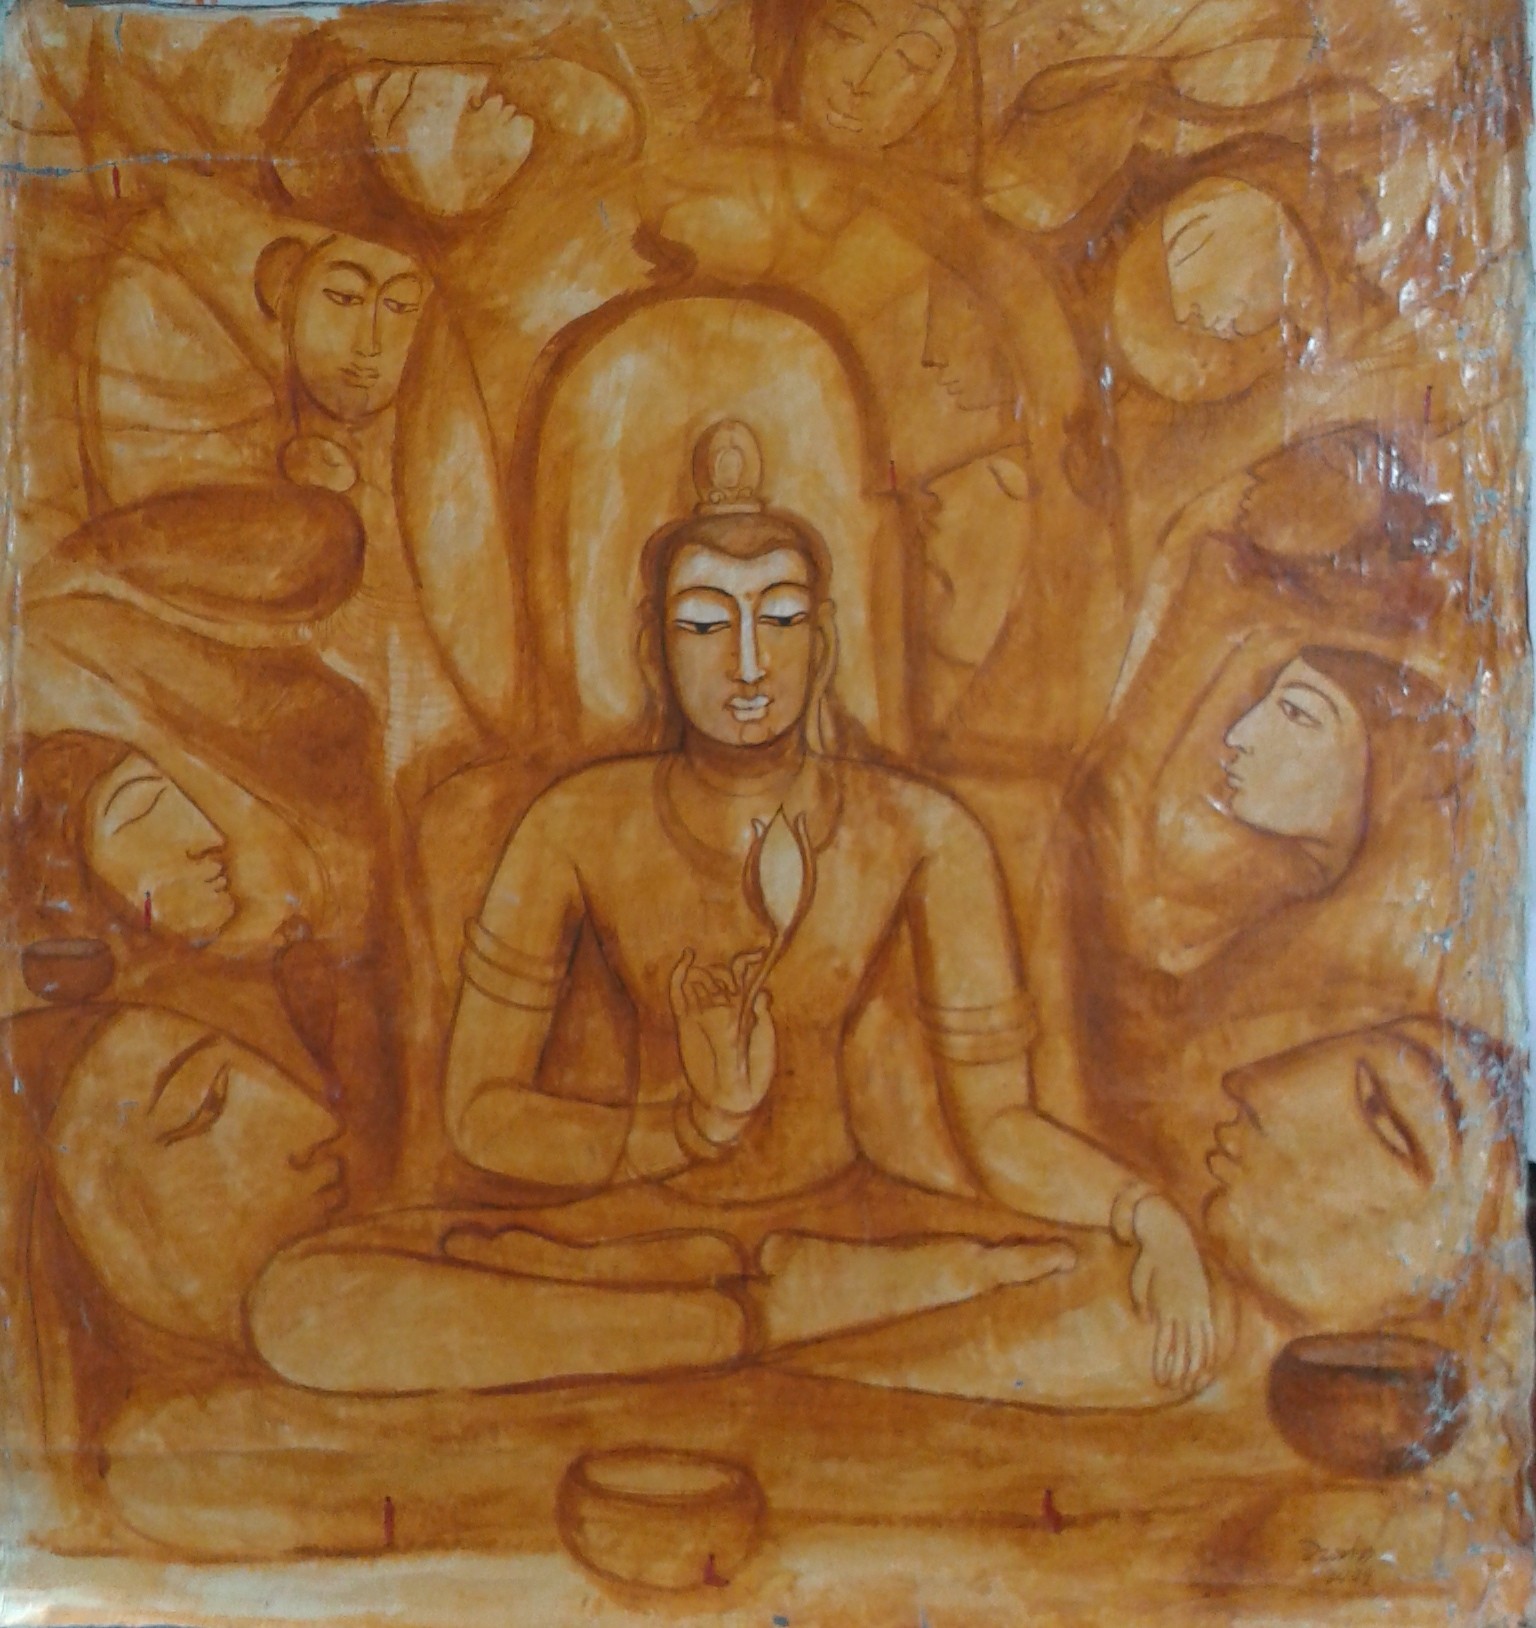 Reflections by Wasantha Namaskara